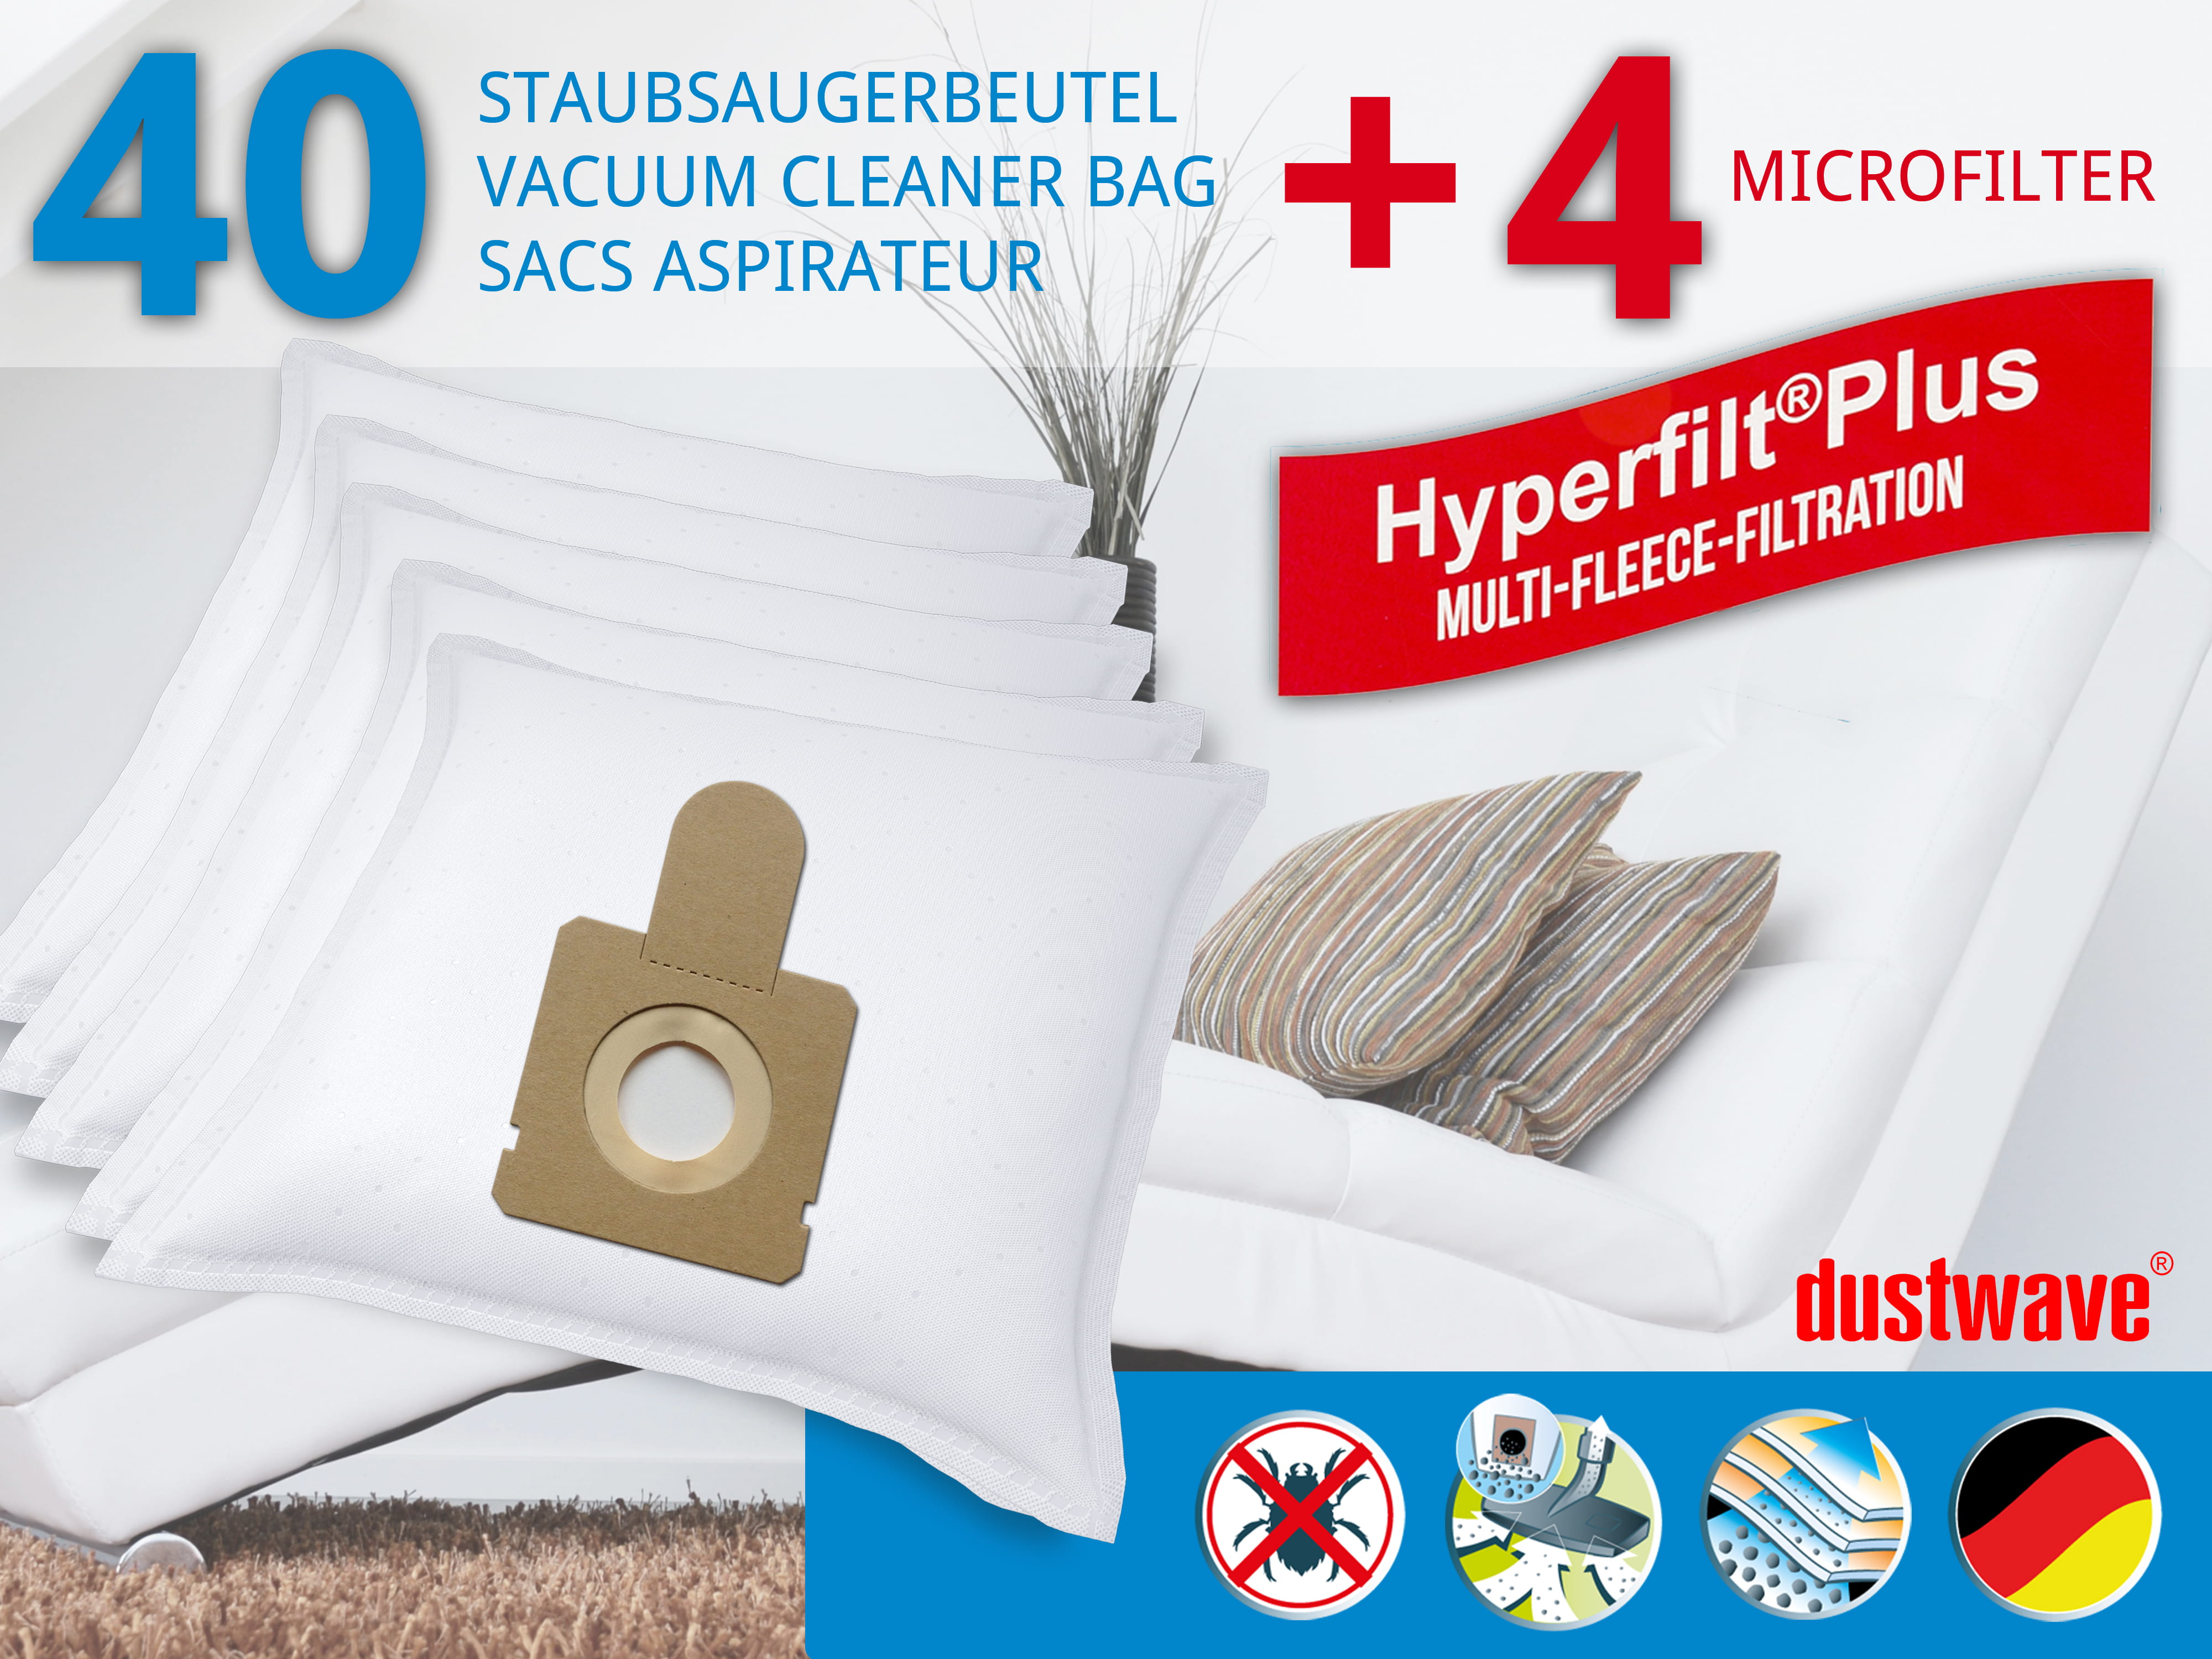 Dustwave® 40 Staubsaugerbeutel für Hoover TFS 5206... FreeSpace - hocheffizient, mehrlagiges Mikrovlies mit Hygieneverschluss - Made in Germany